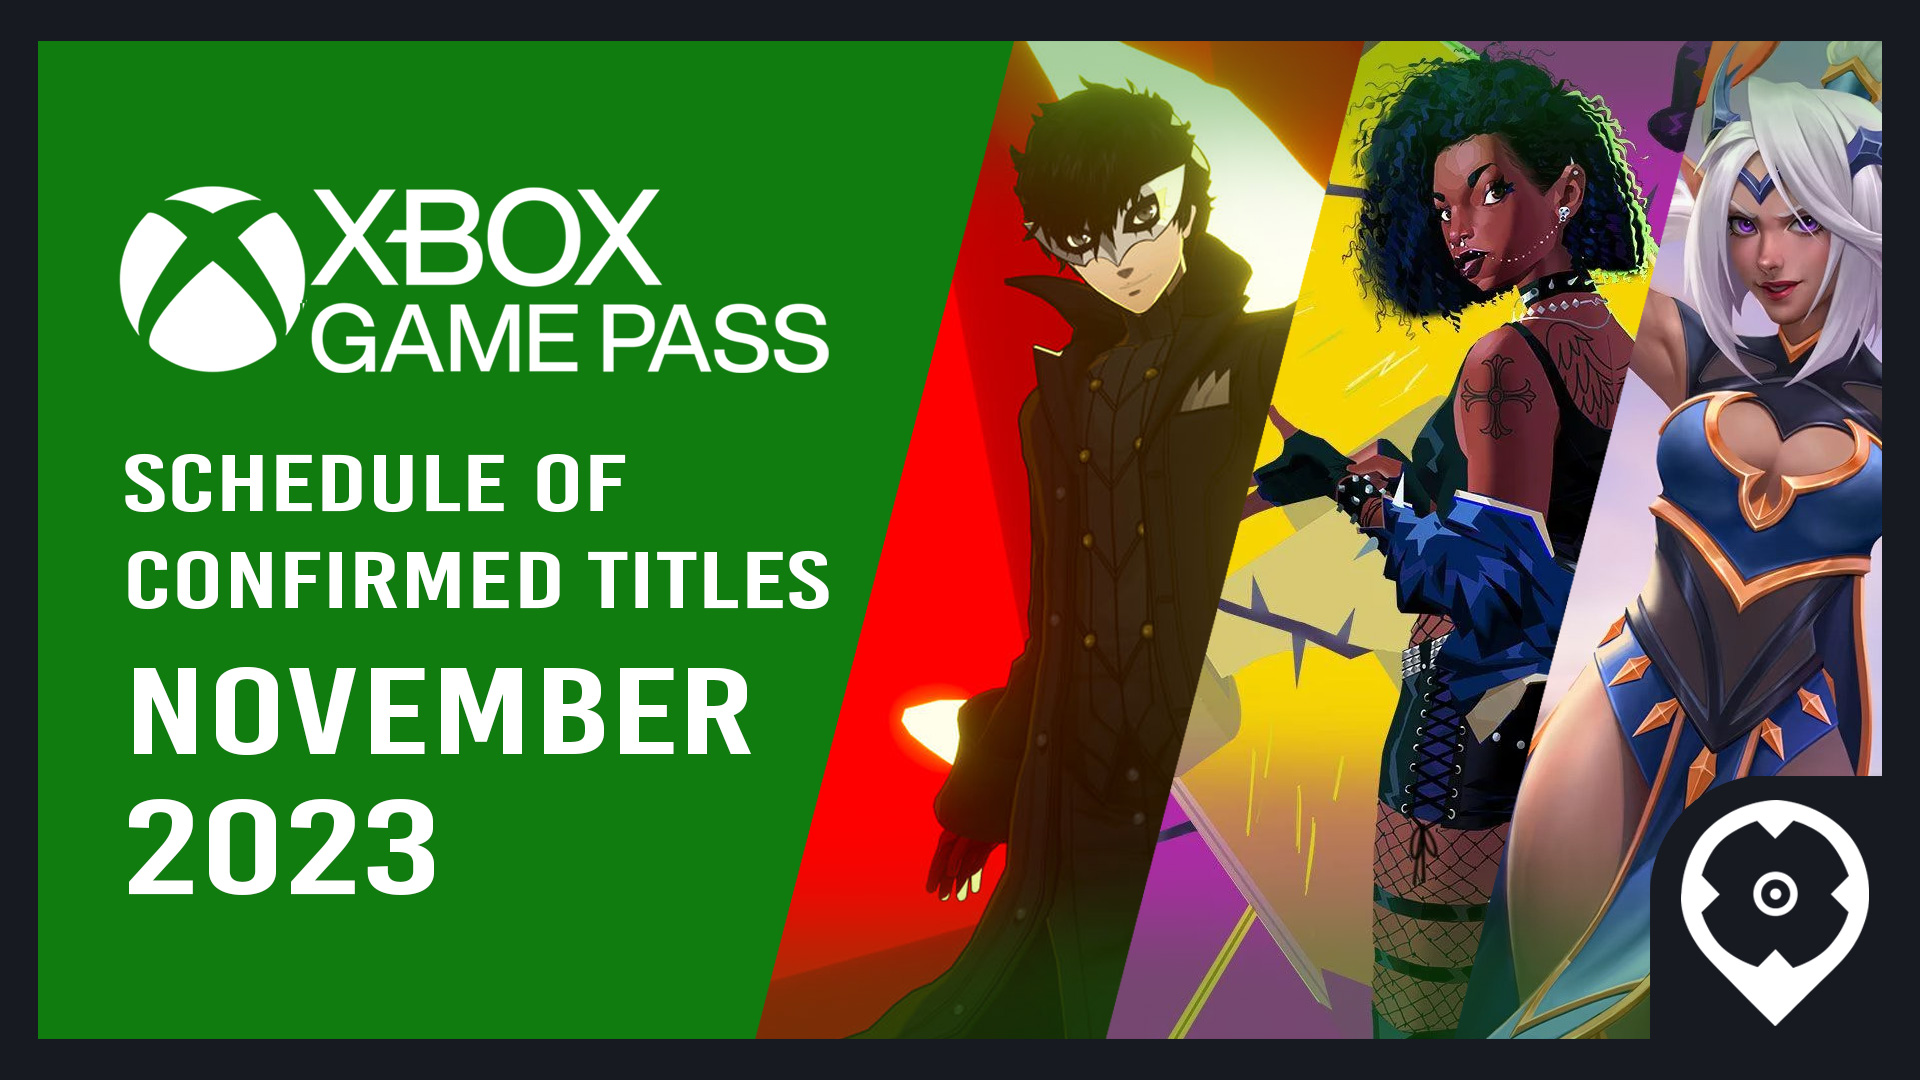 Persona 5 Tactica e Rollerdrome chegam ao Xbox Game Pass